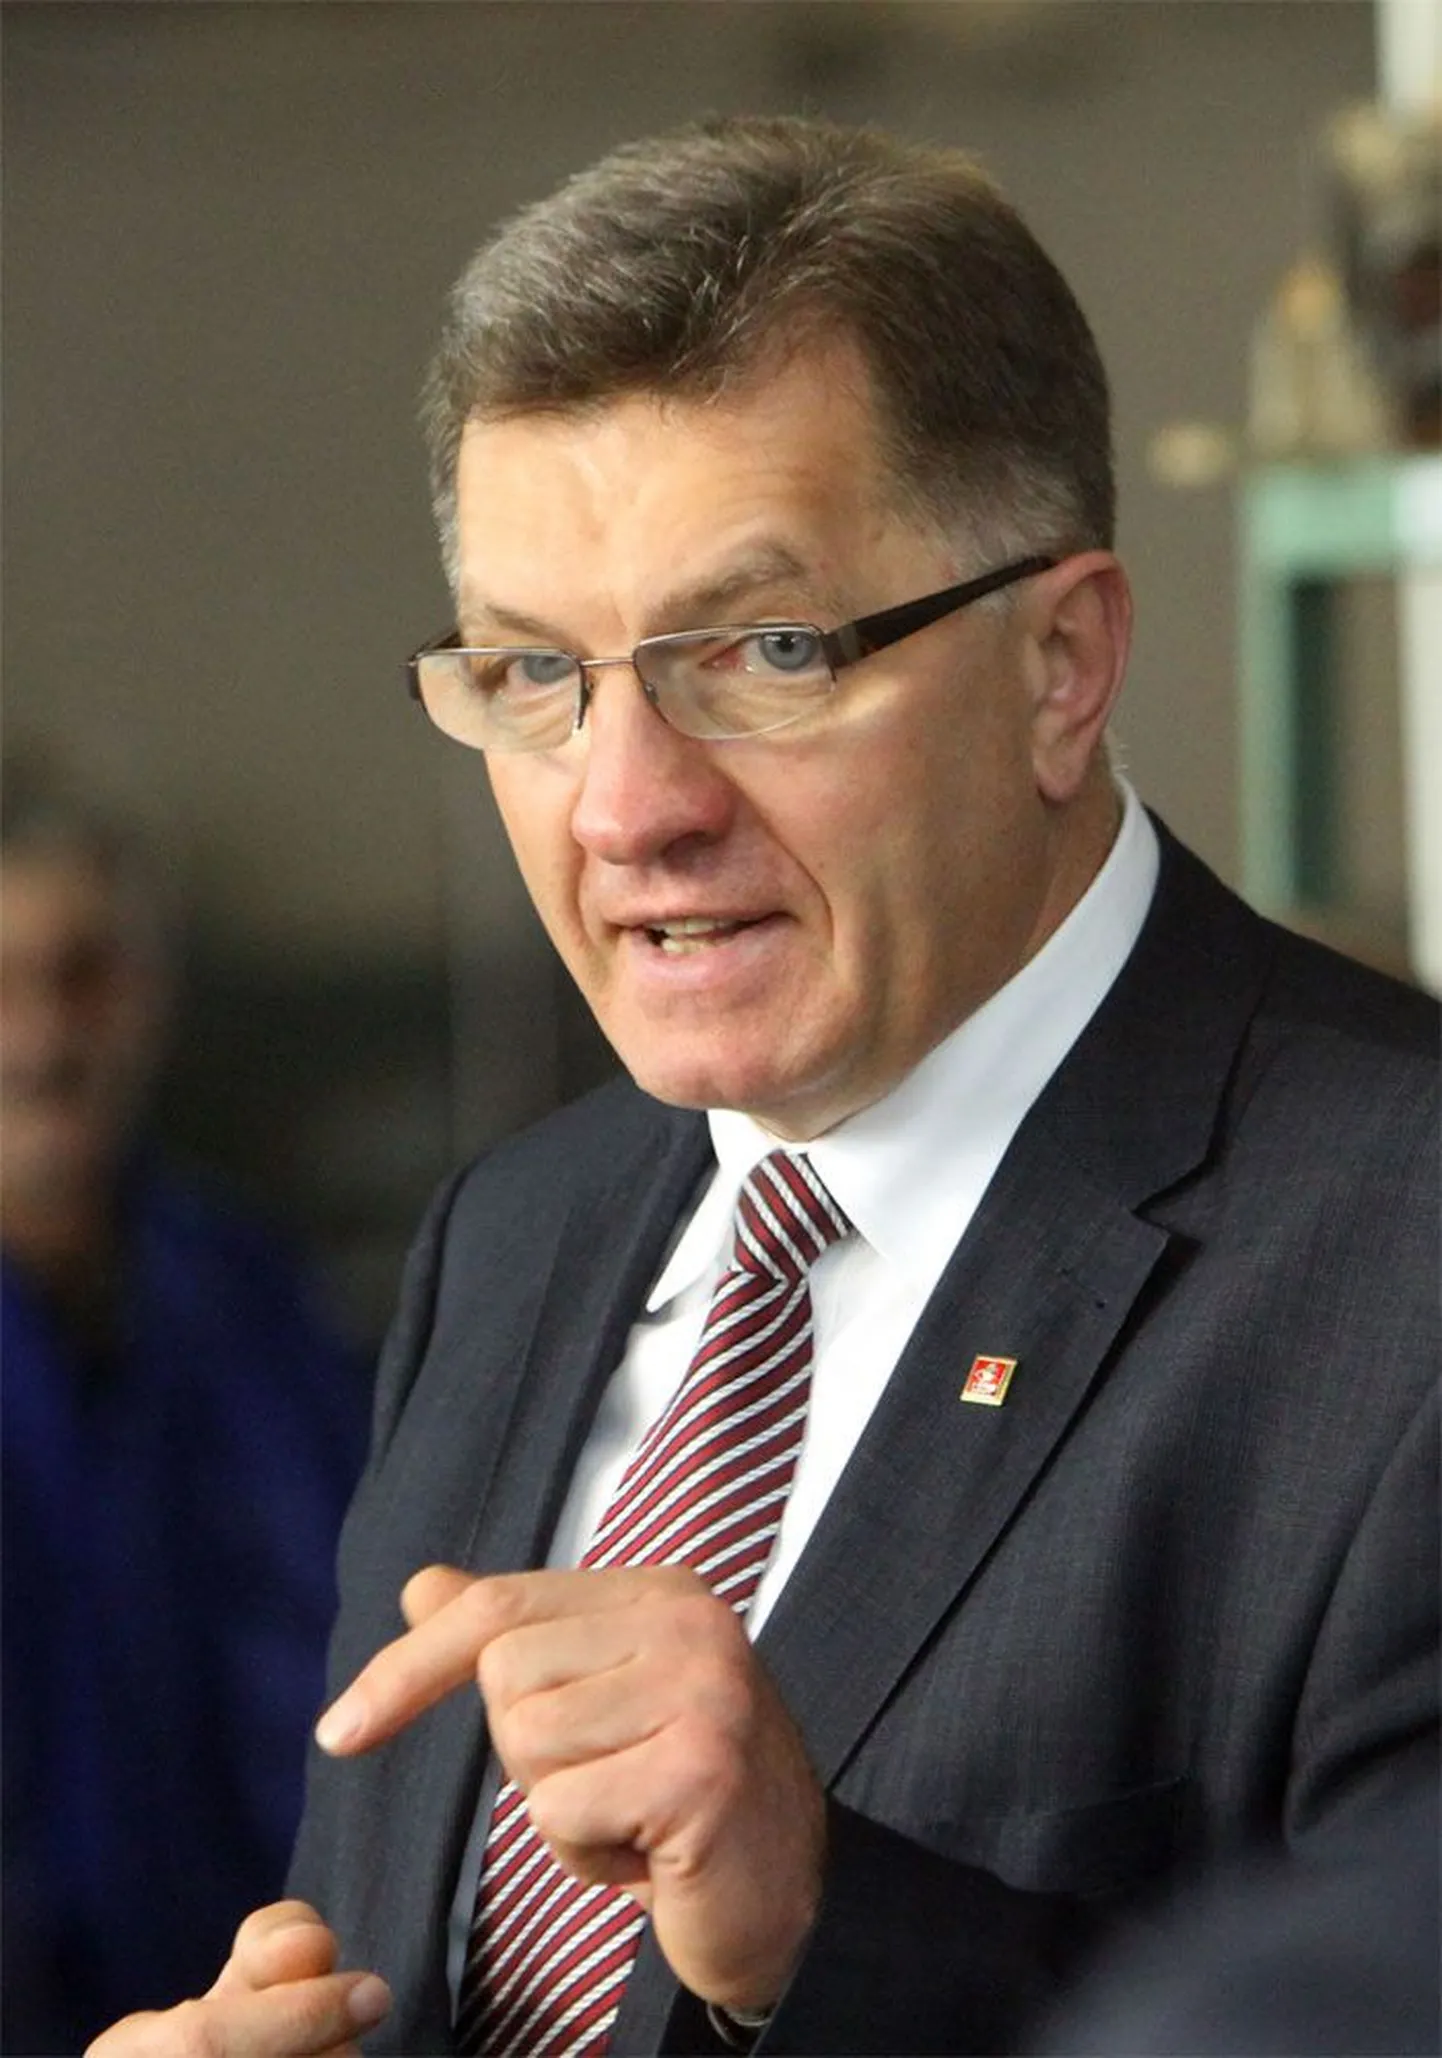 Leedu peaministrit ja sotside liidrit Algridas Butkevičiust ei peeta kuigi karismaatiliseks, ent pärast valimisvõitu saadab teda jätkuv populaarsus.